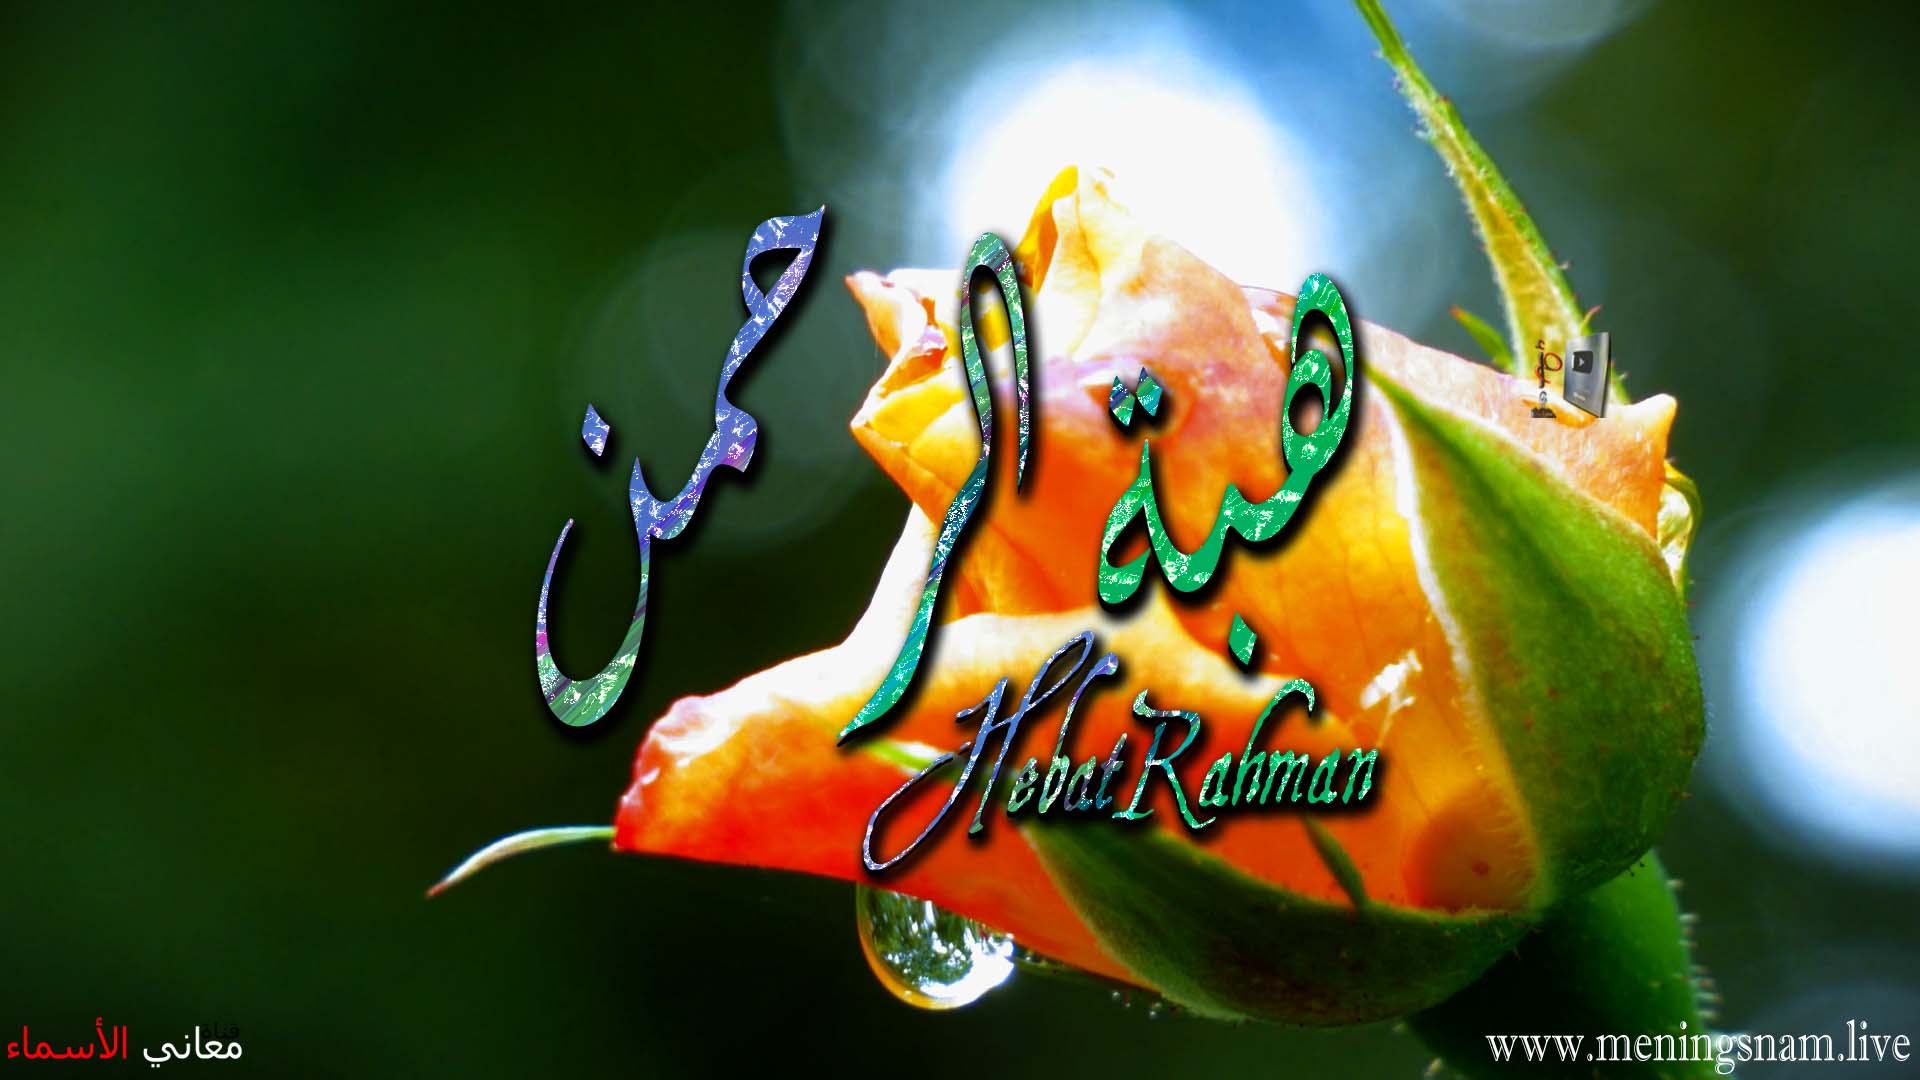 معنى اسم, هبة الرحمن, وصفات, حاملة, وحامل, هذا الاسم, Hibat Rahman,